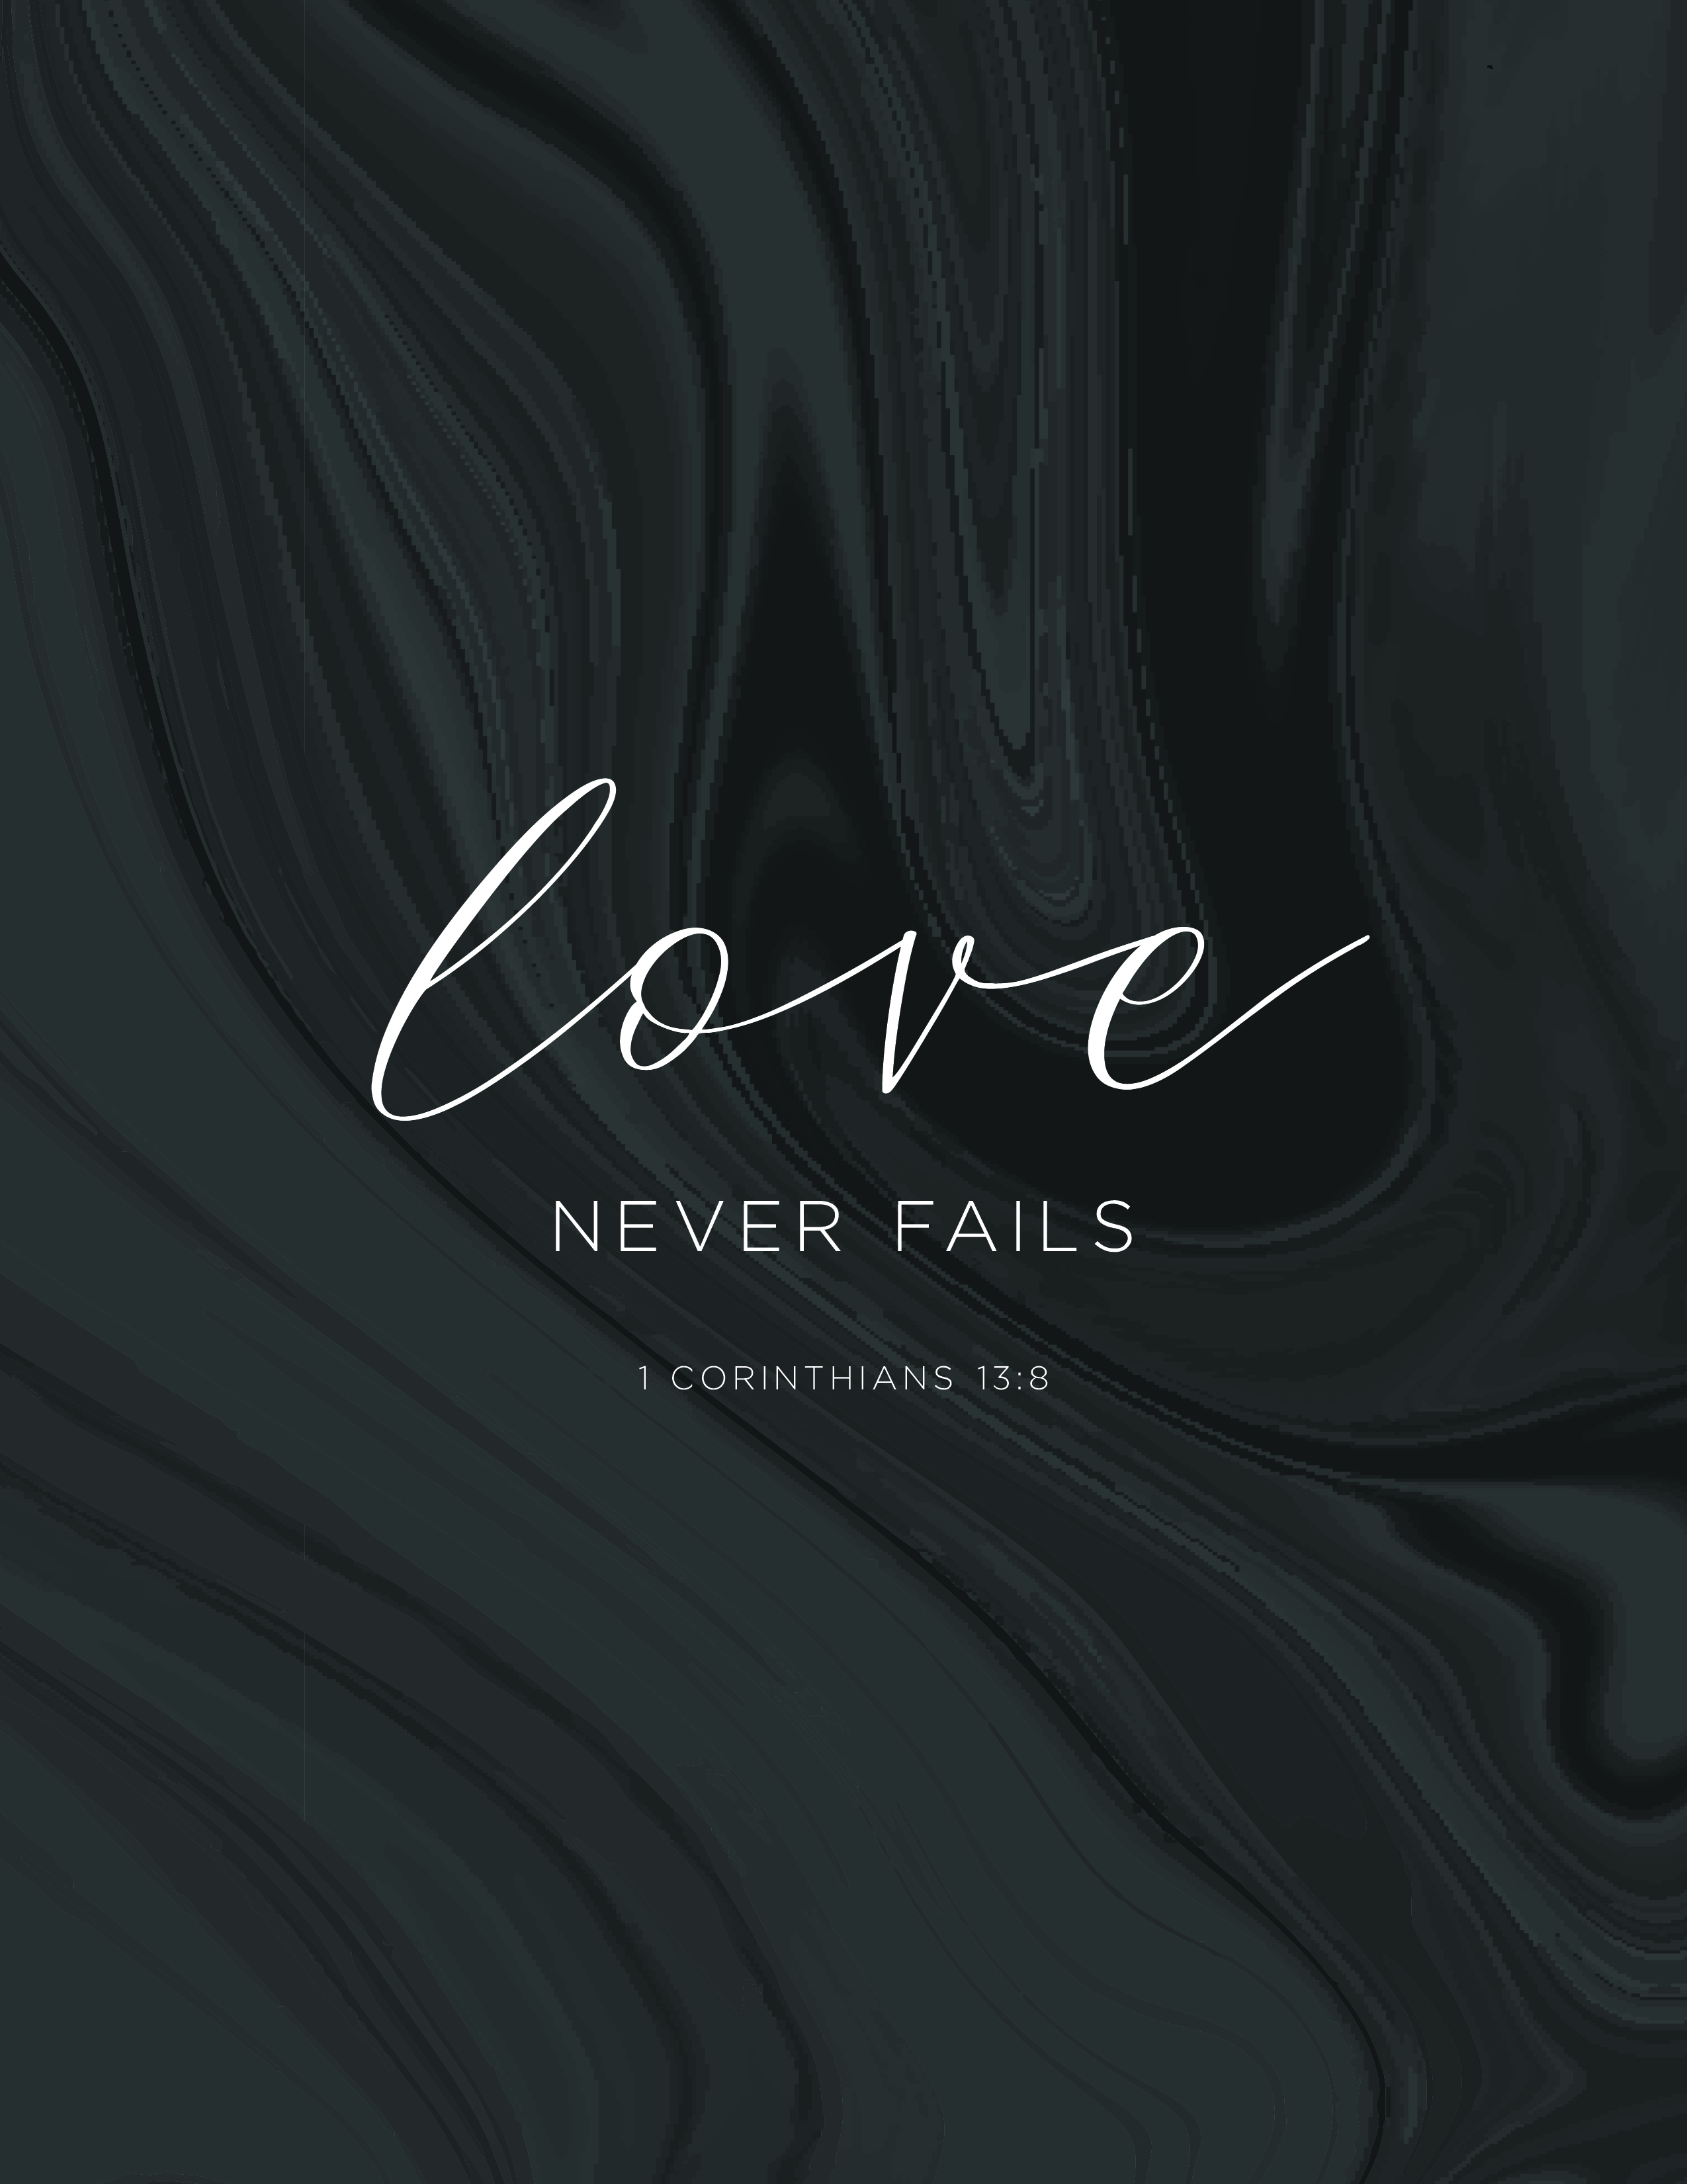 Tuesday: Love Never Fails